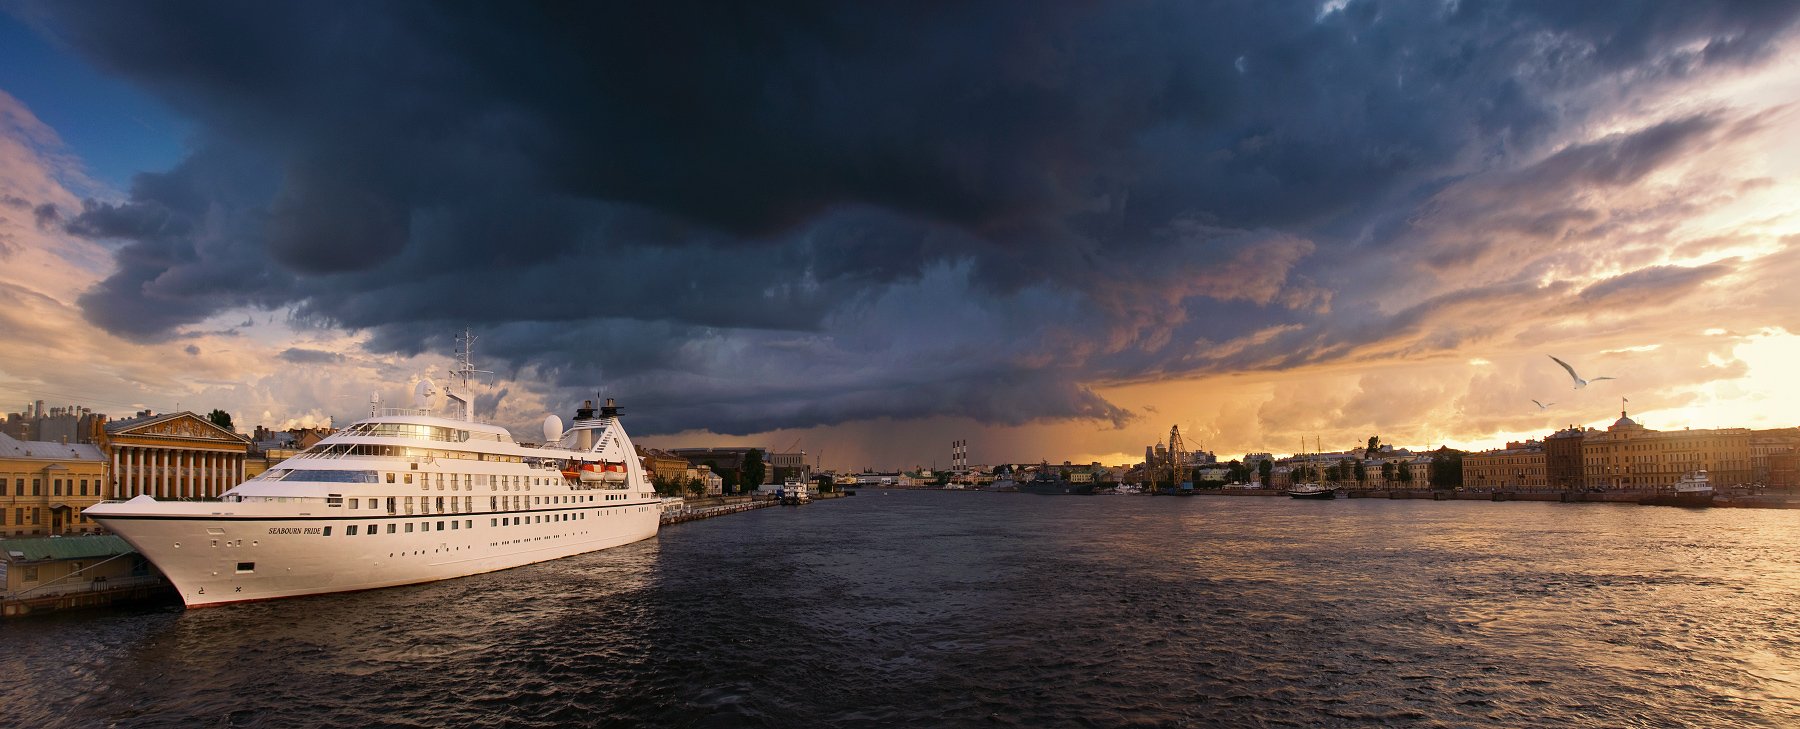 санкт-петербург, панорама, нева, река, закат, корабль, тучи, небо, вечер, россия, Денис Богомолов